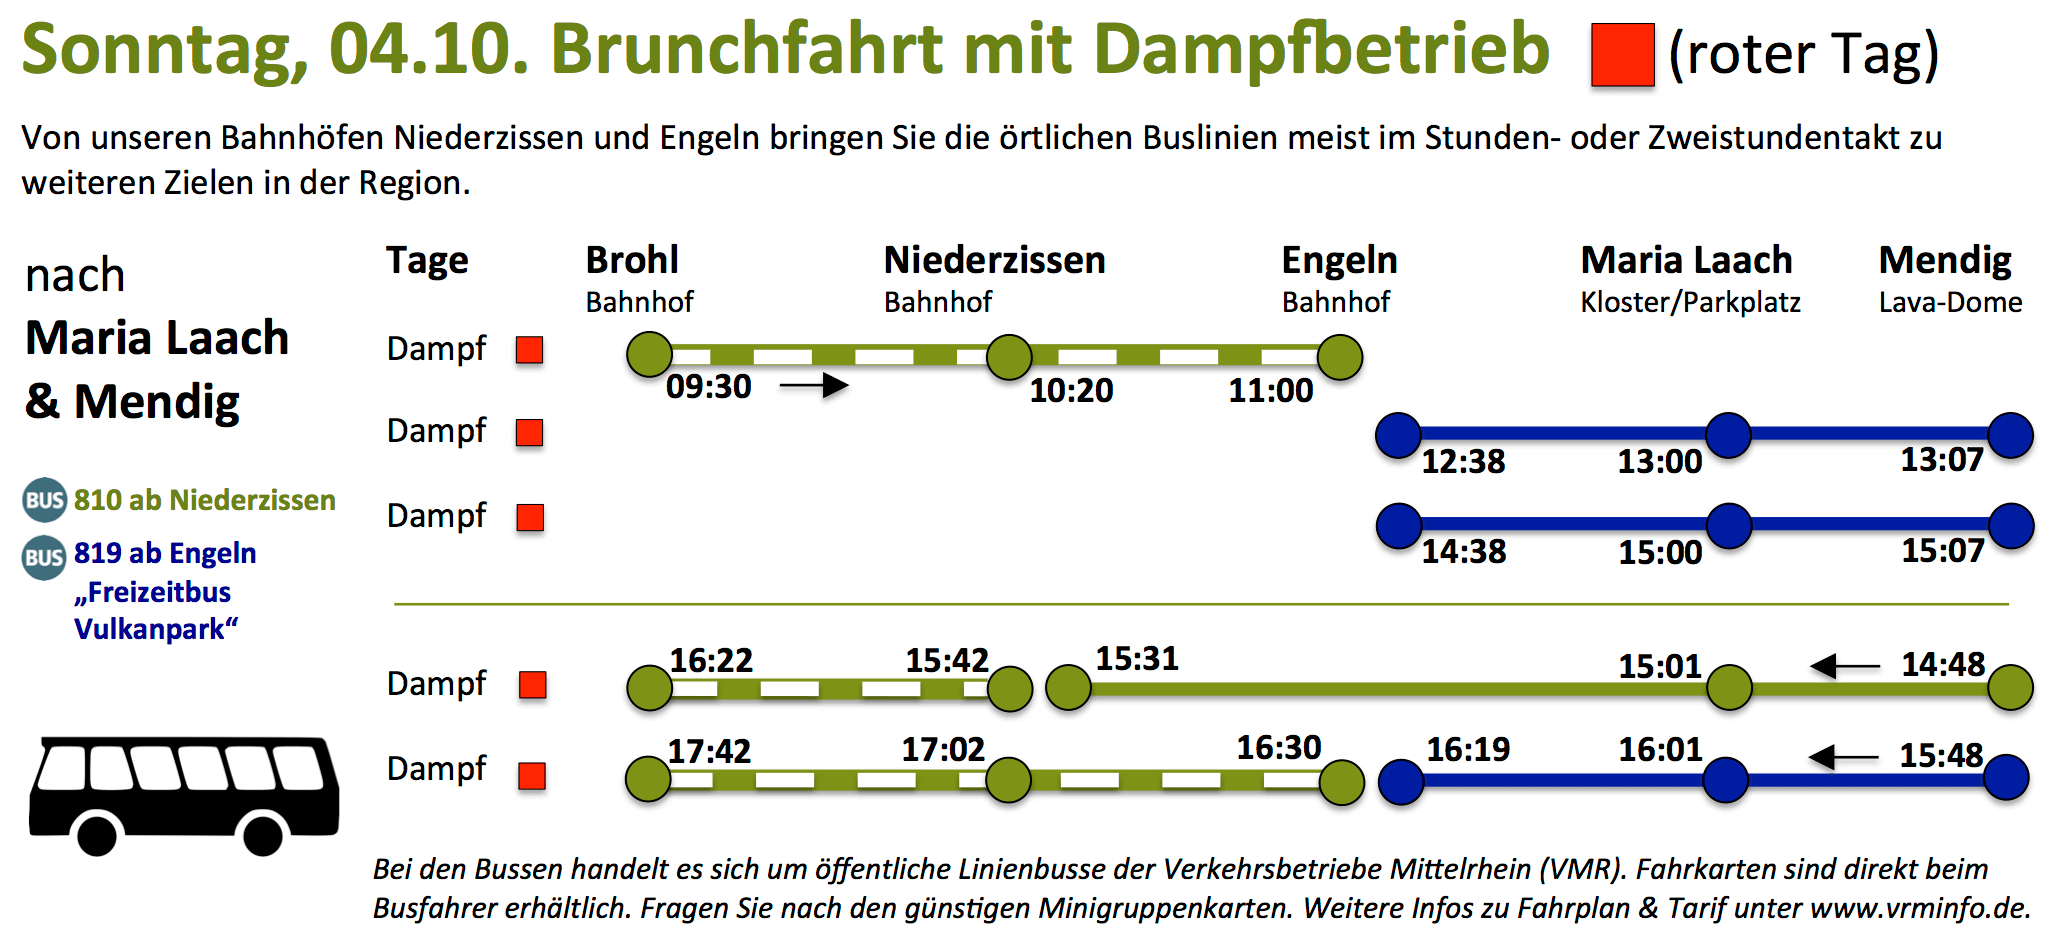 191210 Hg Bus Brunch 4.10.2020